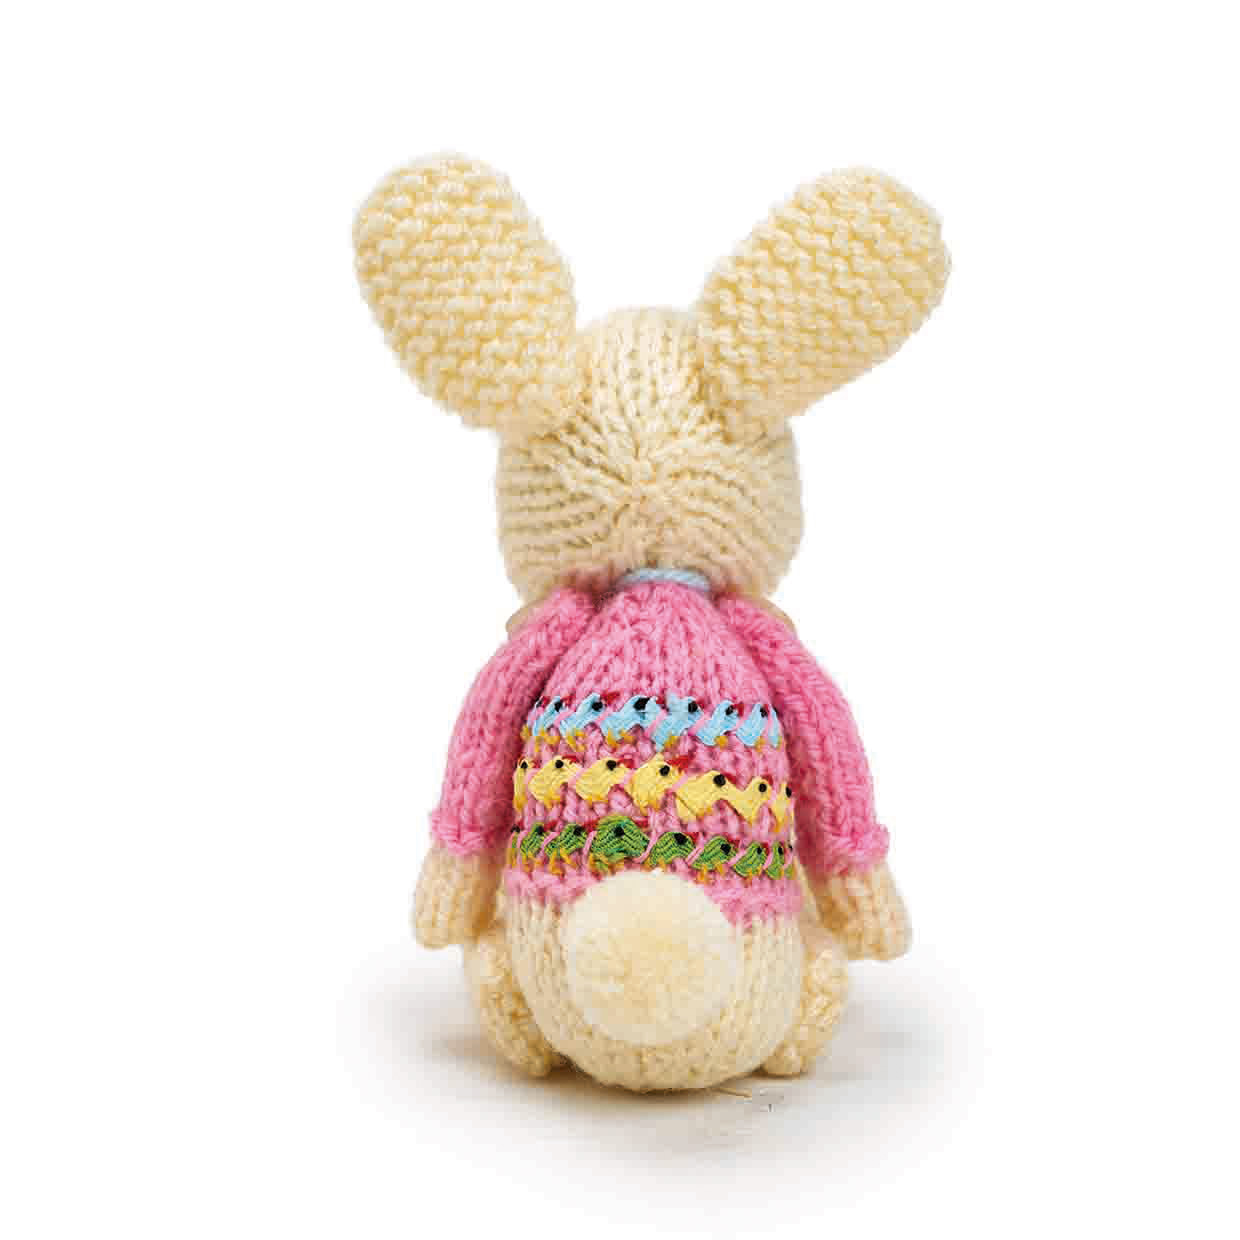 Knitted bunny pattern pompom